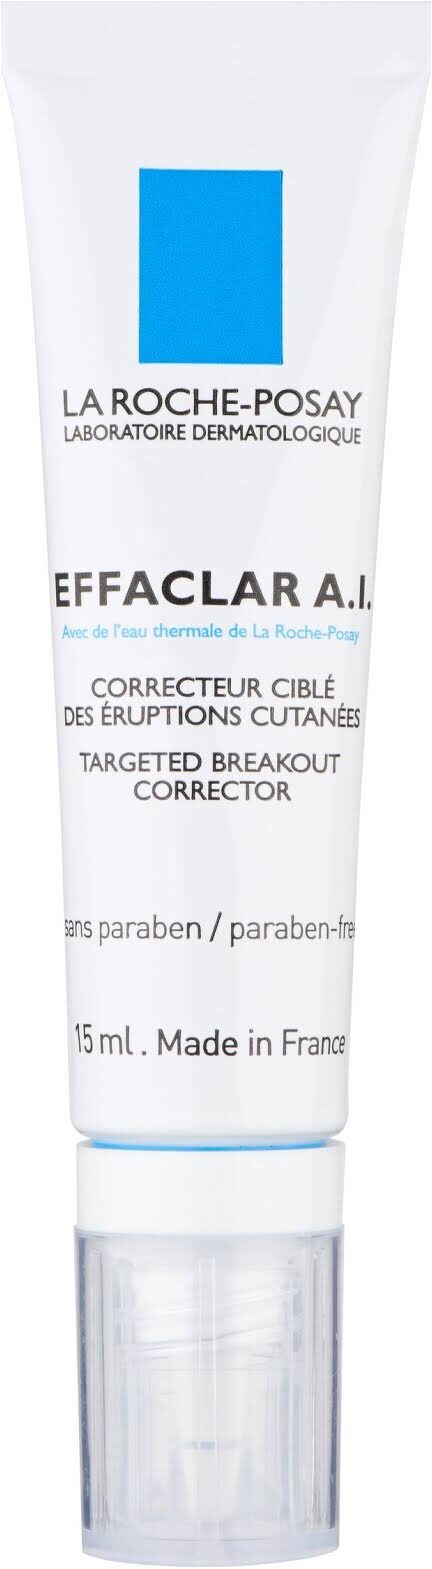 effaclar - Produkt - fr